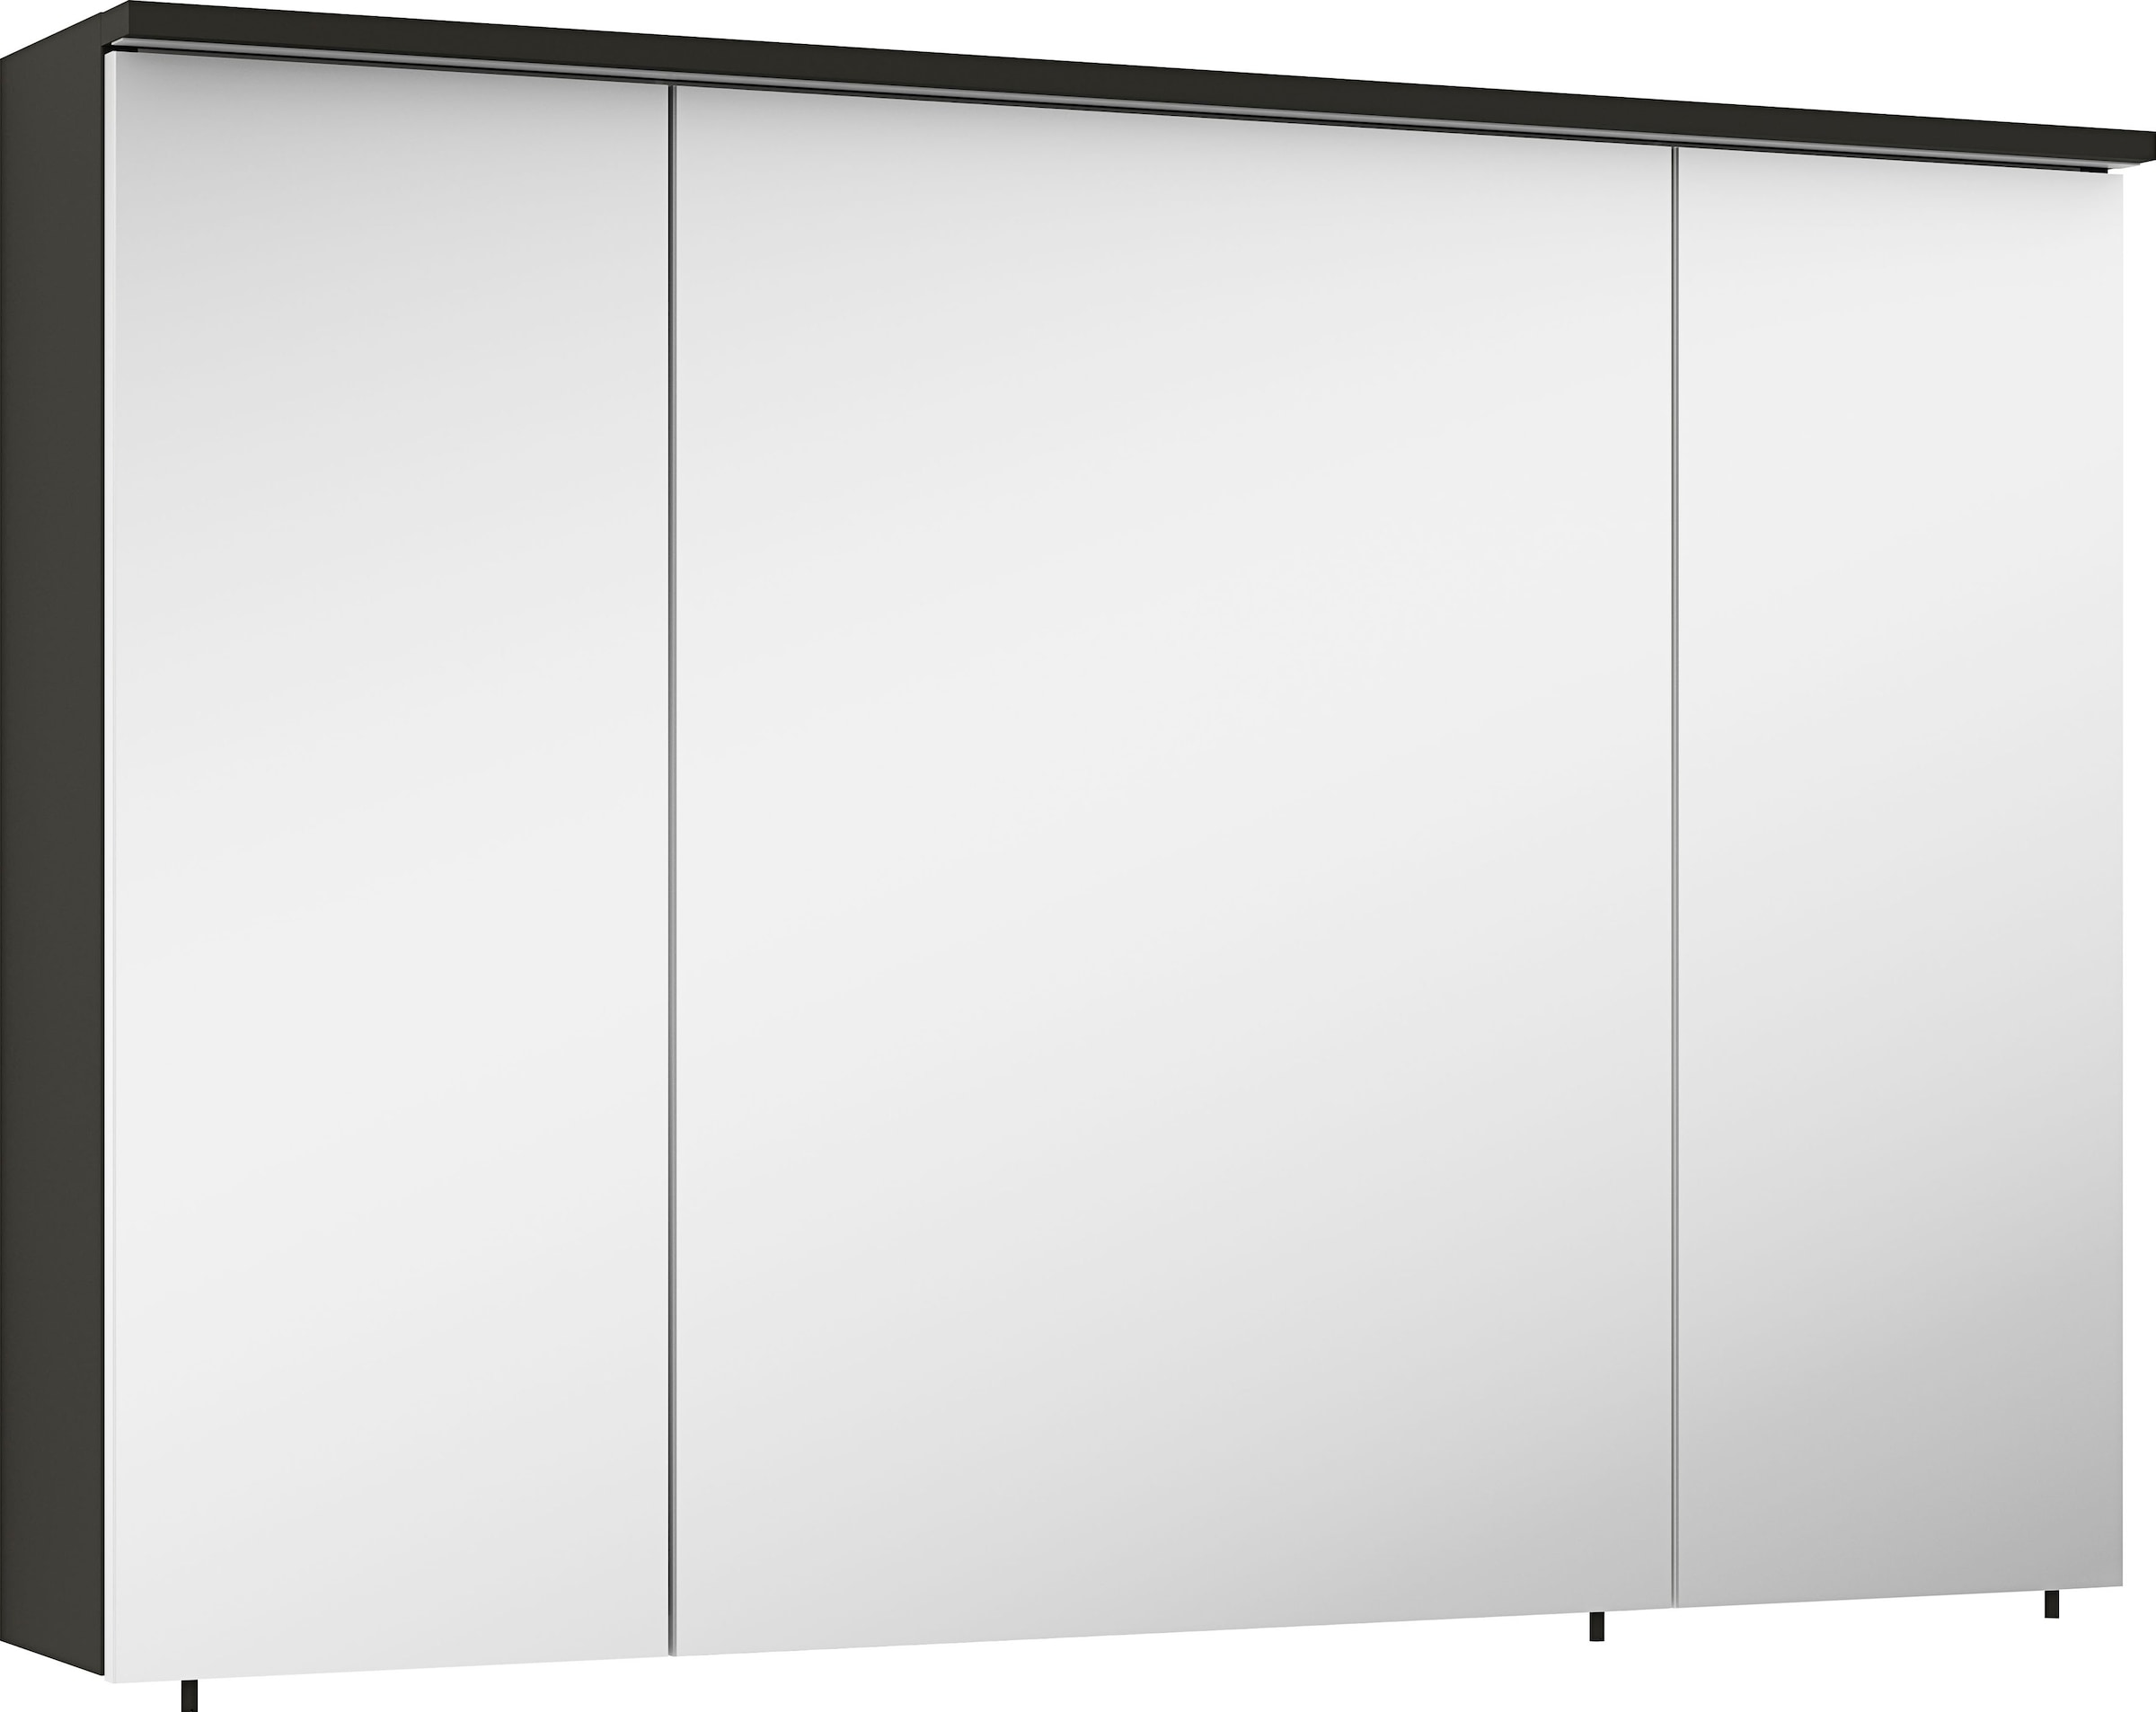 MARLIN Spiegelschrank »3500maxus«, 100 cm breit, Soft-Close-Funktion, inkl. Beleuchtung, Badschrank